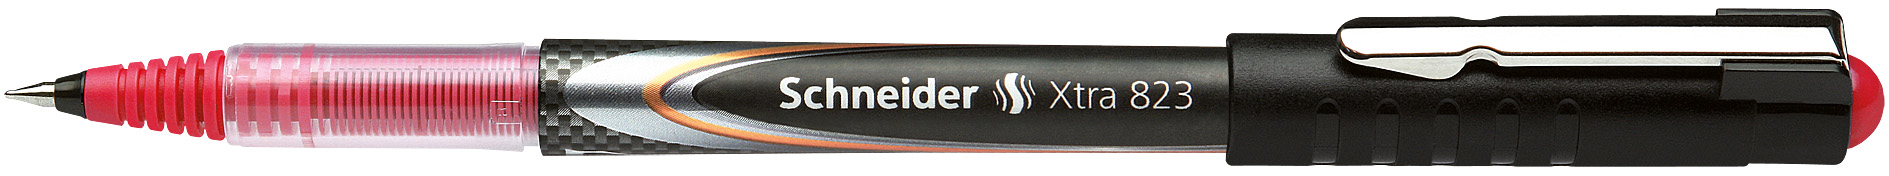 Feinschreiber Schneider Xtra 823